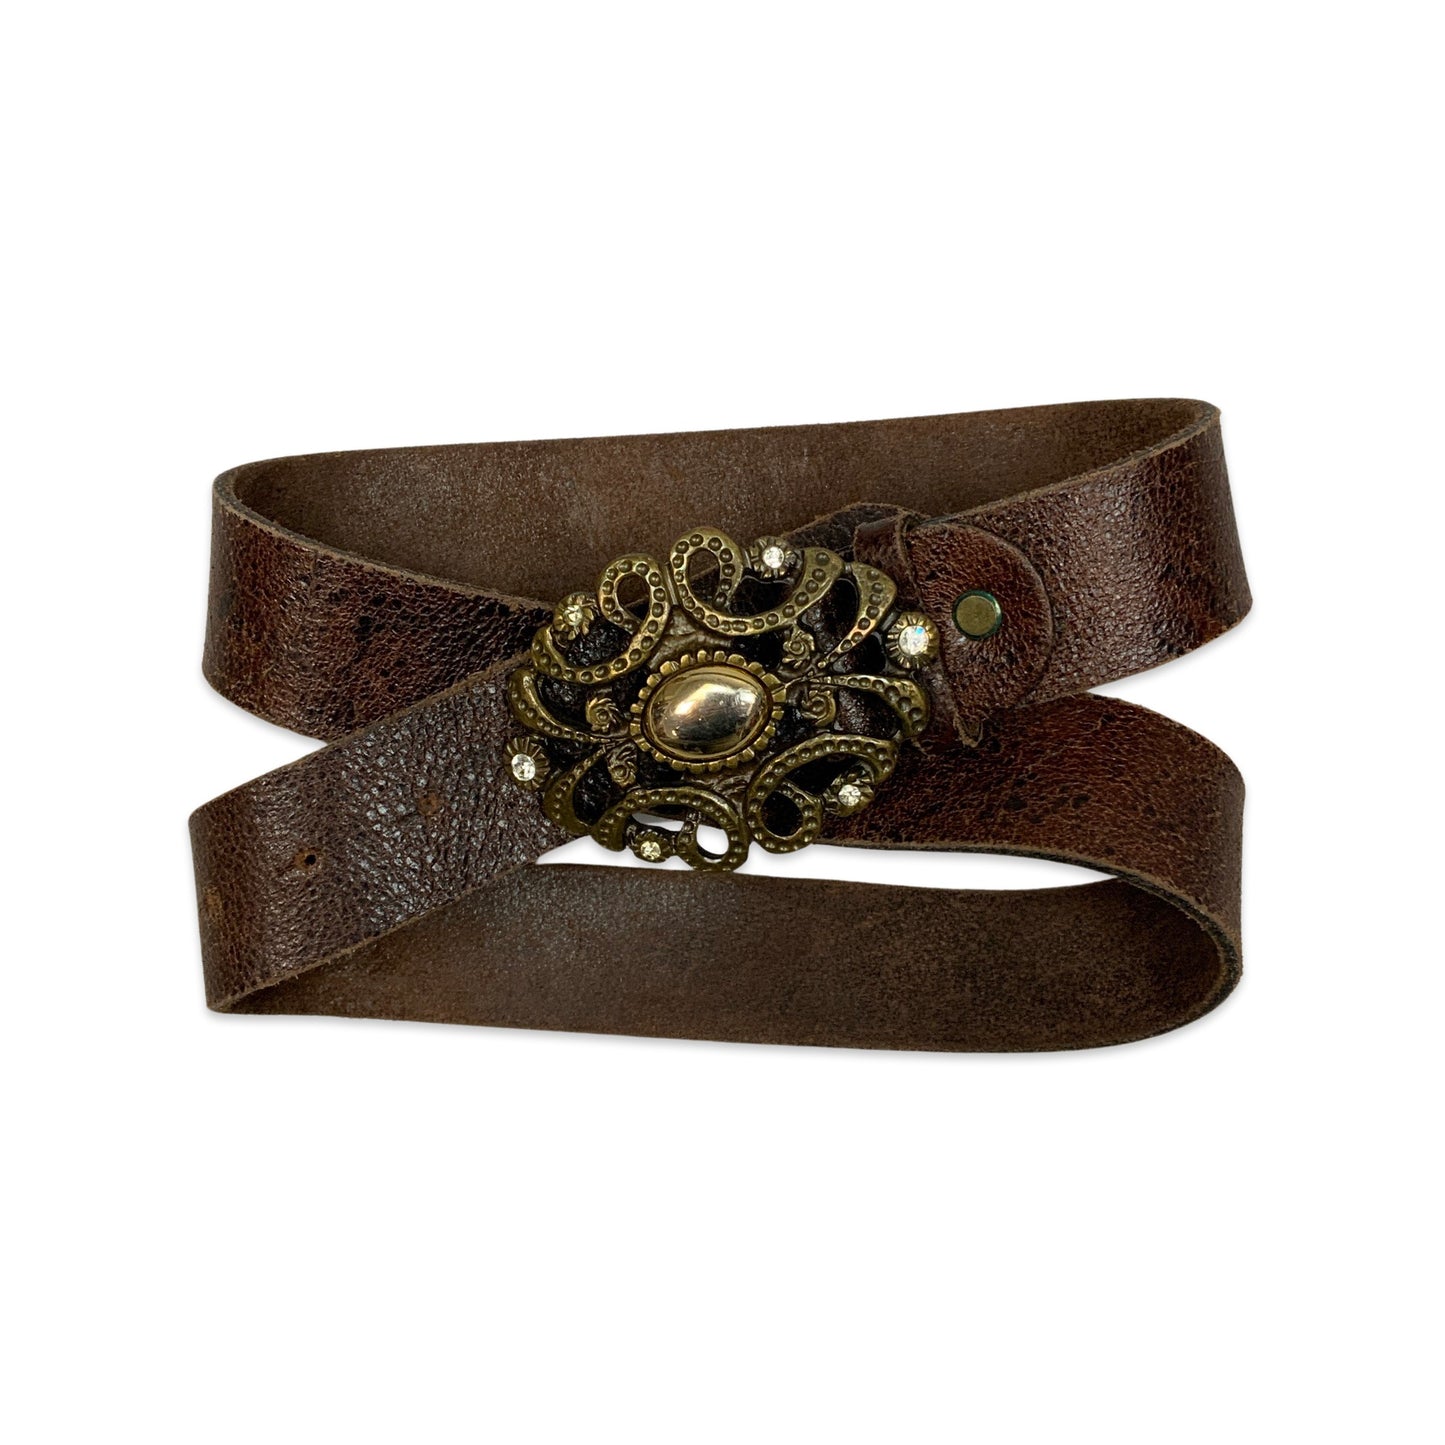 Vintage Ornate Buckle Brown Leather Belt